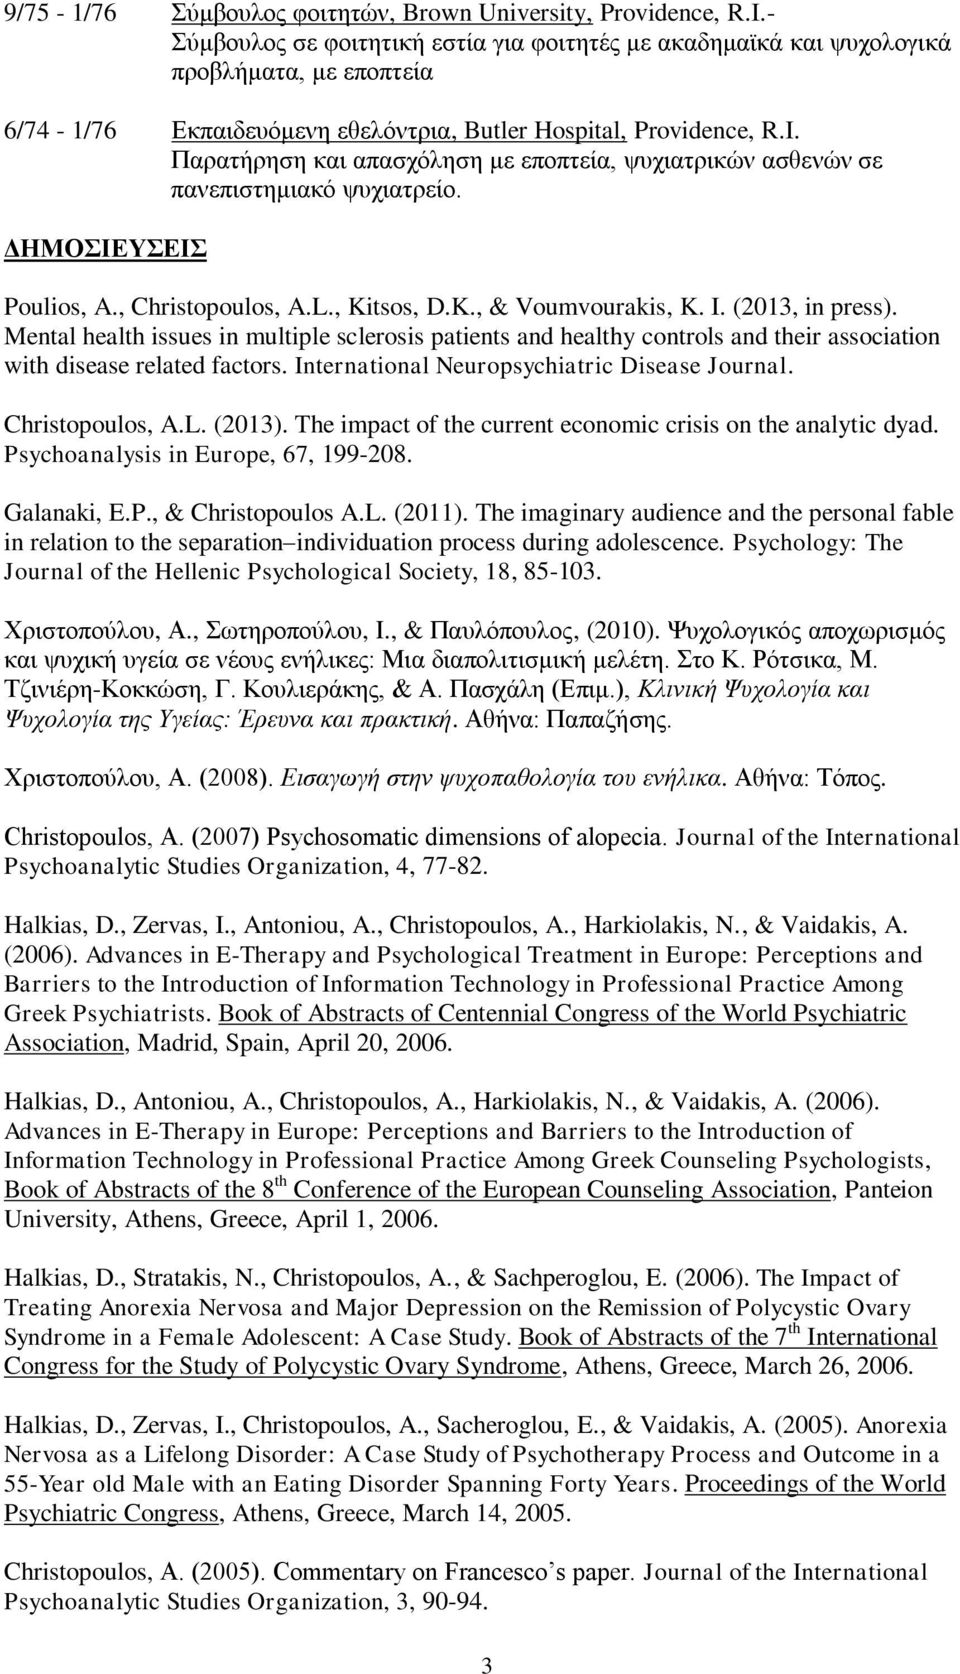 Παρατήρηση και απασχόληση με εποπτεία, ψυχιατρικών ασθενών σε πανεπιστημιακό ψυχιατρείο. ΔΗΜΟΣΙΕΥΣΕΙΣ Poulios, A., Christopoulos, A.L., Kitsos, D.K., & Voumvourakis, K. I. (2013, in press).